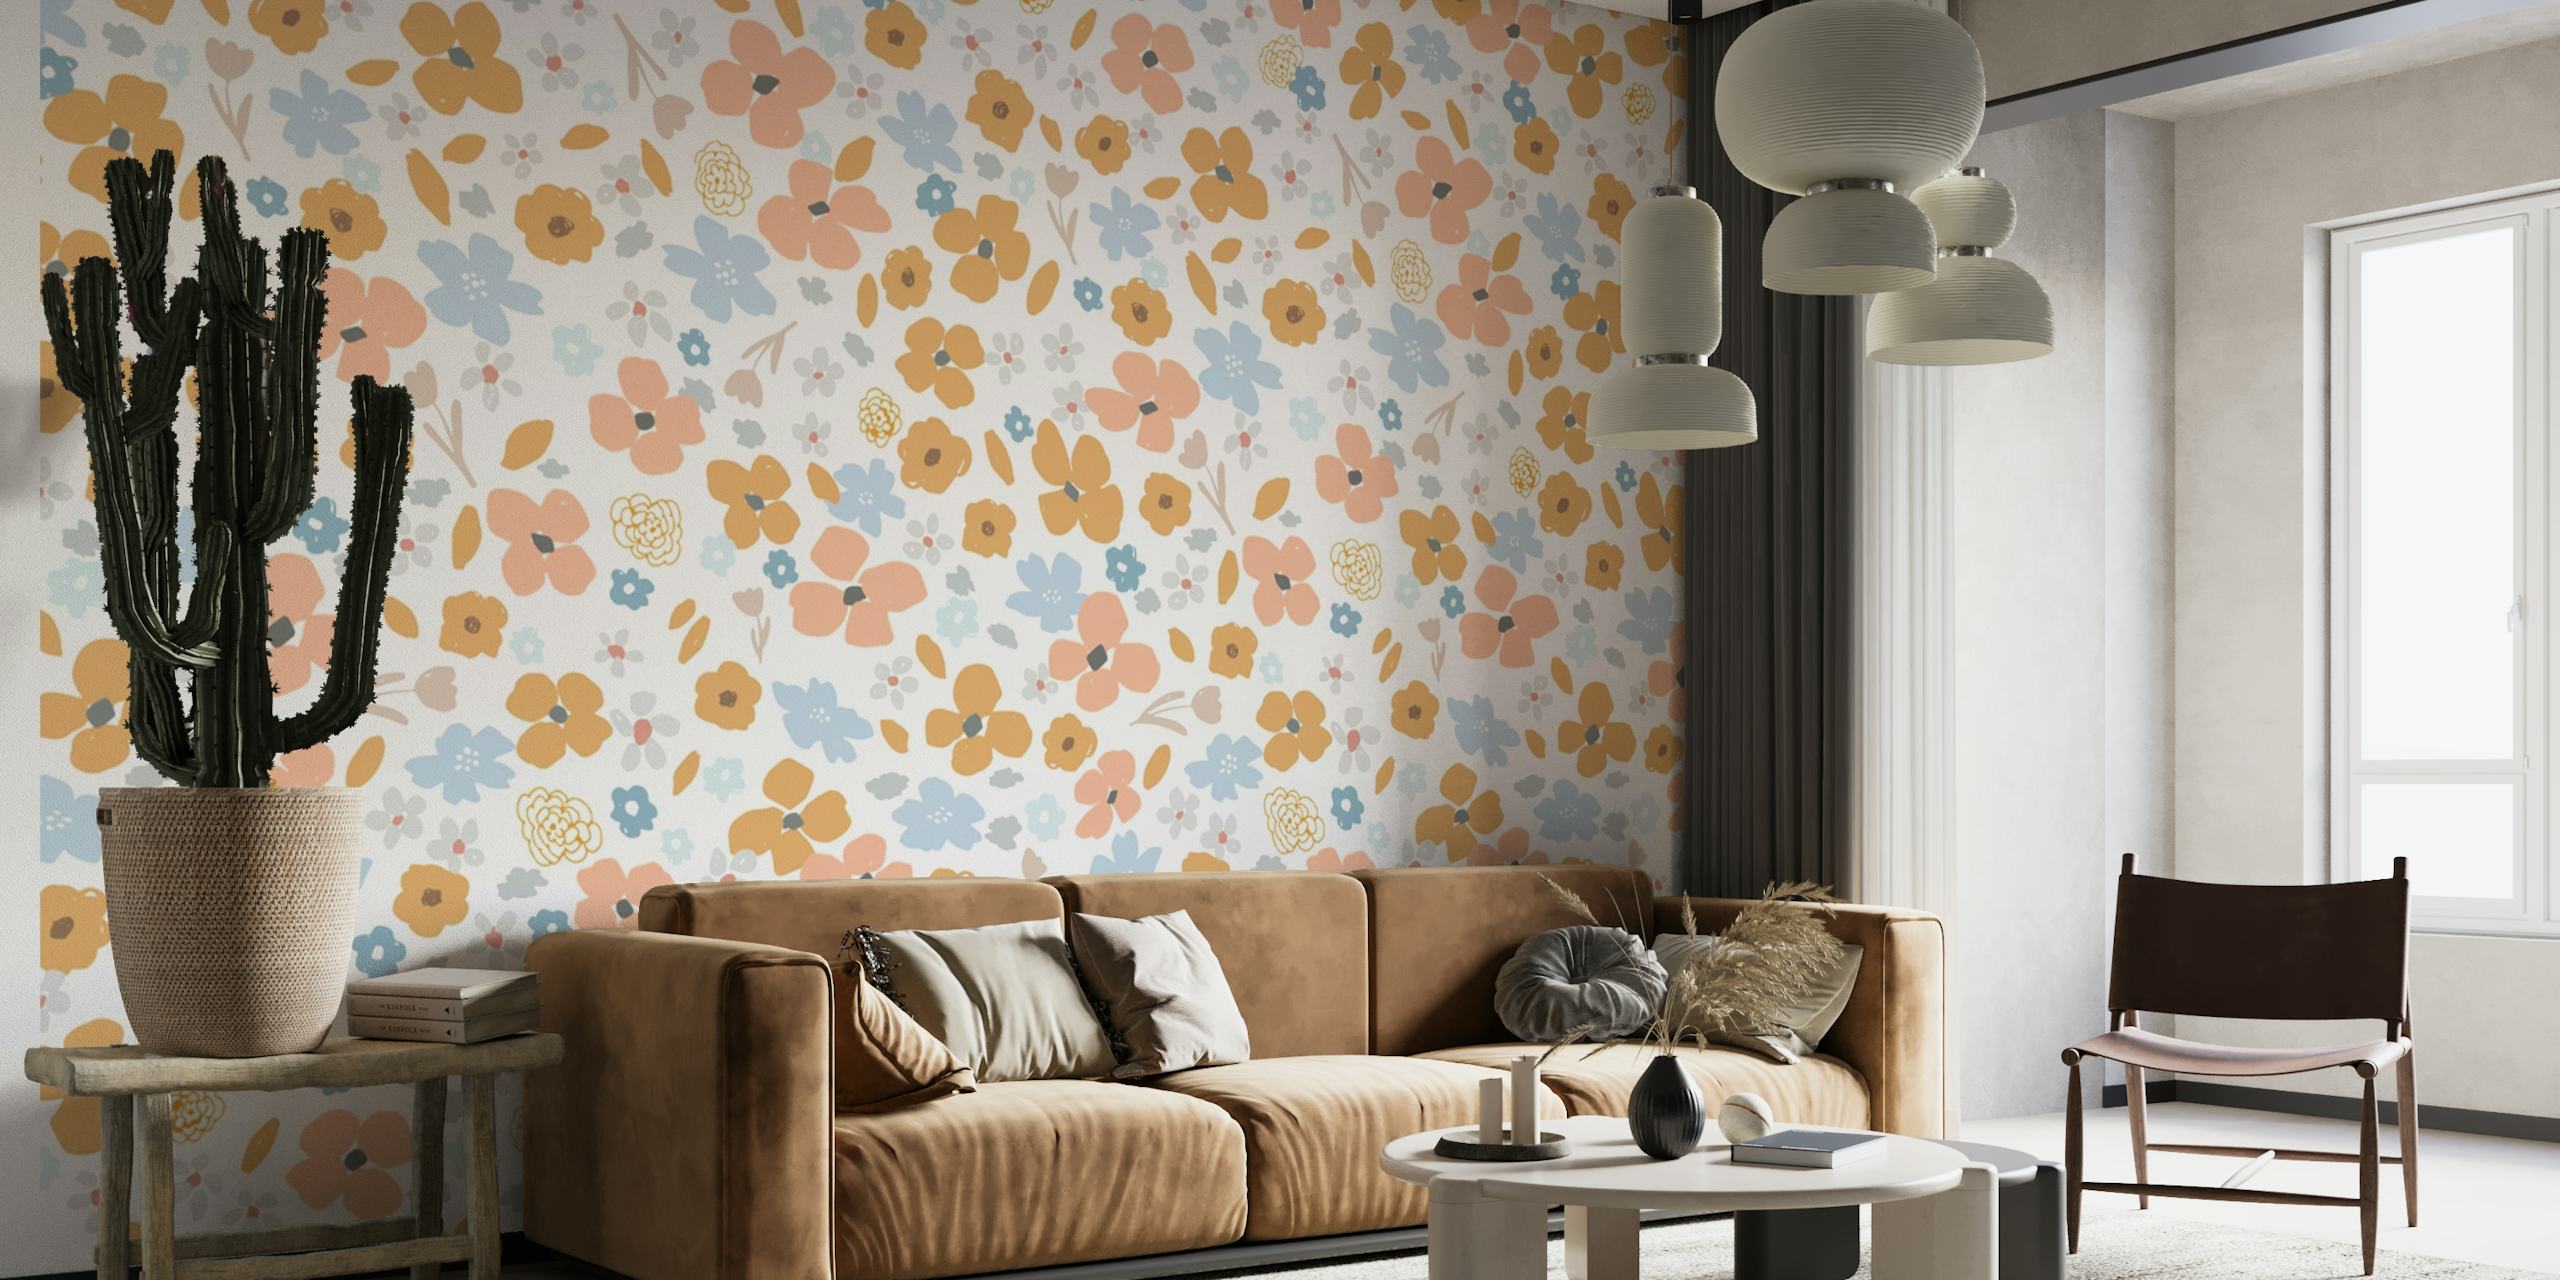 Marie_modern kukkakuvio, jossa on sinappia, poskipunaa ja perunakukkia luonnonvalkoisella taustalla seinämaalaukseen